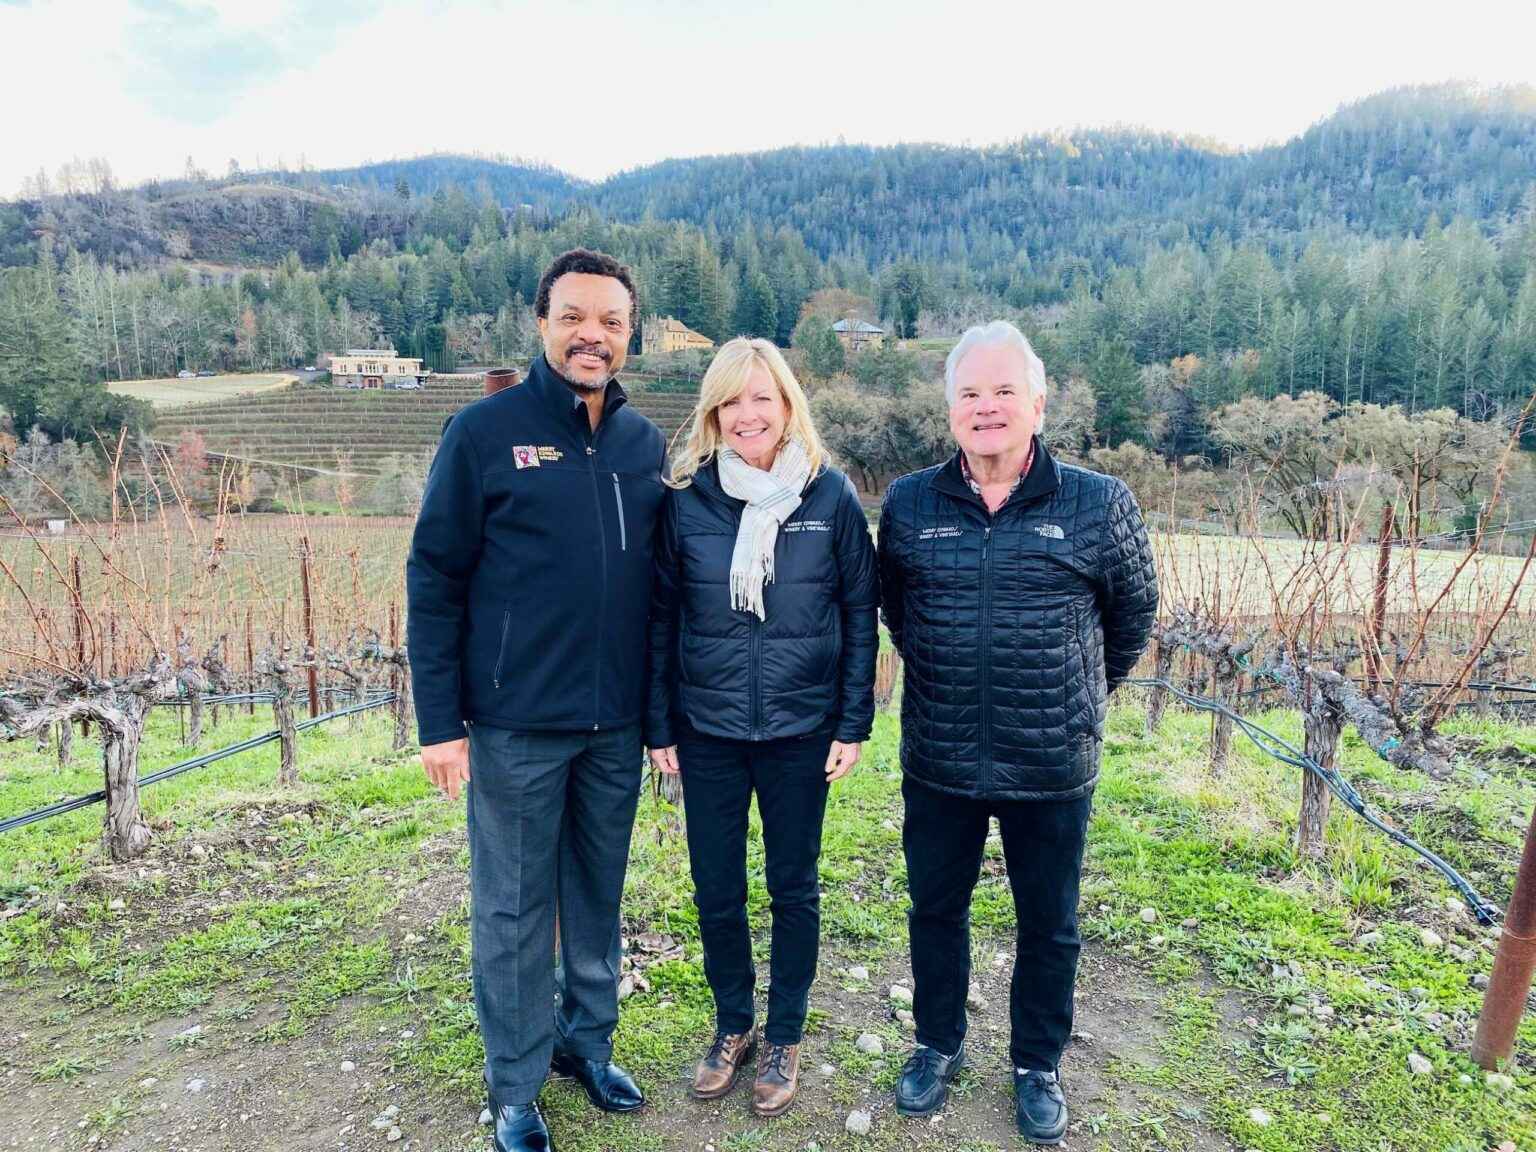 3 members of trade team standing in vineyard